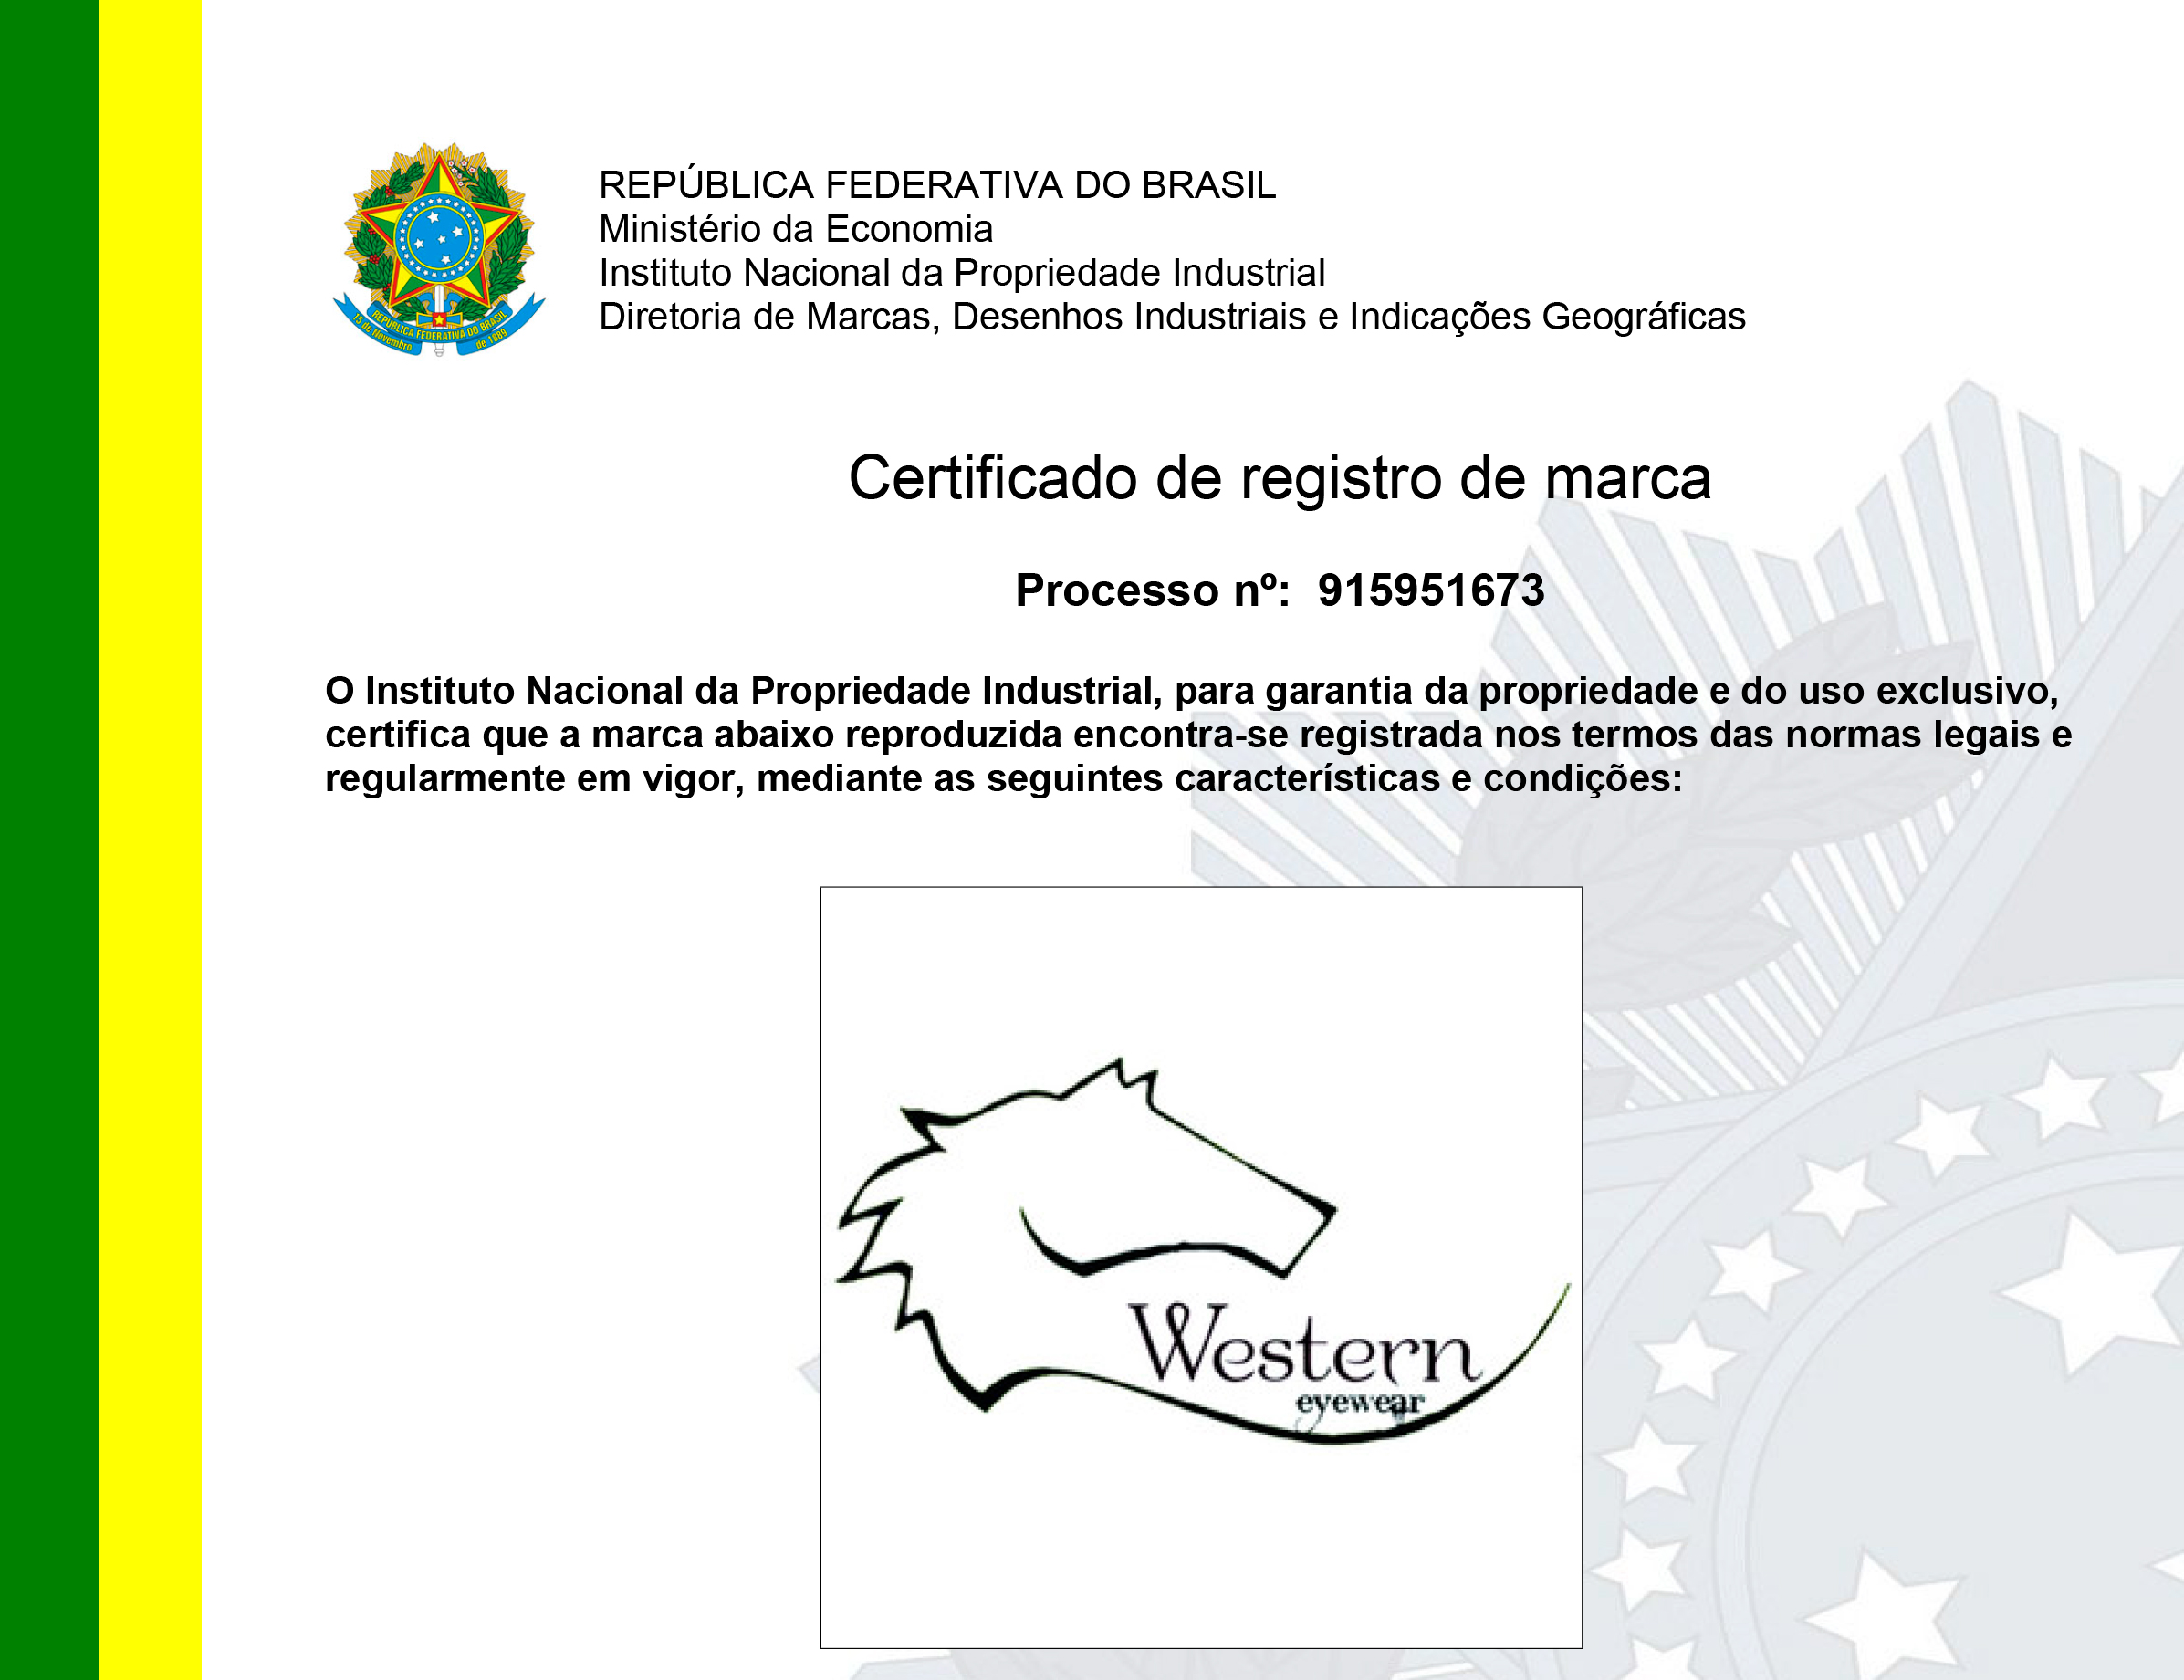 CERTIFICADO-DE-REGISTRO-WESTERN-1